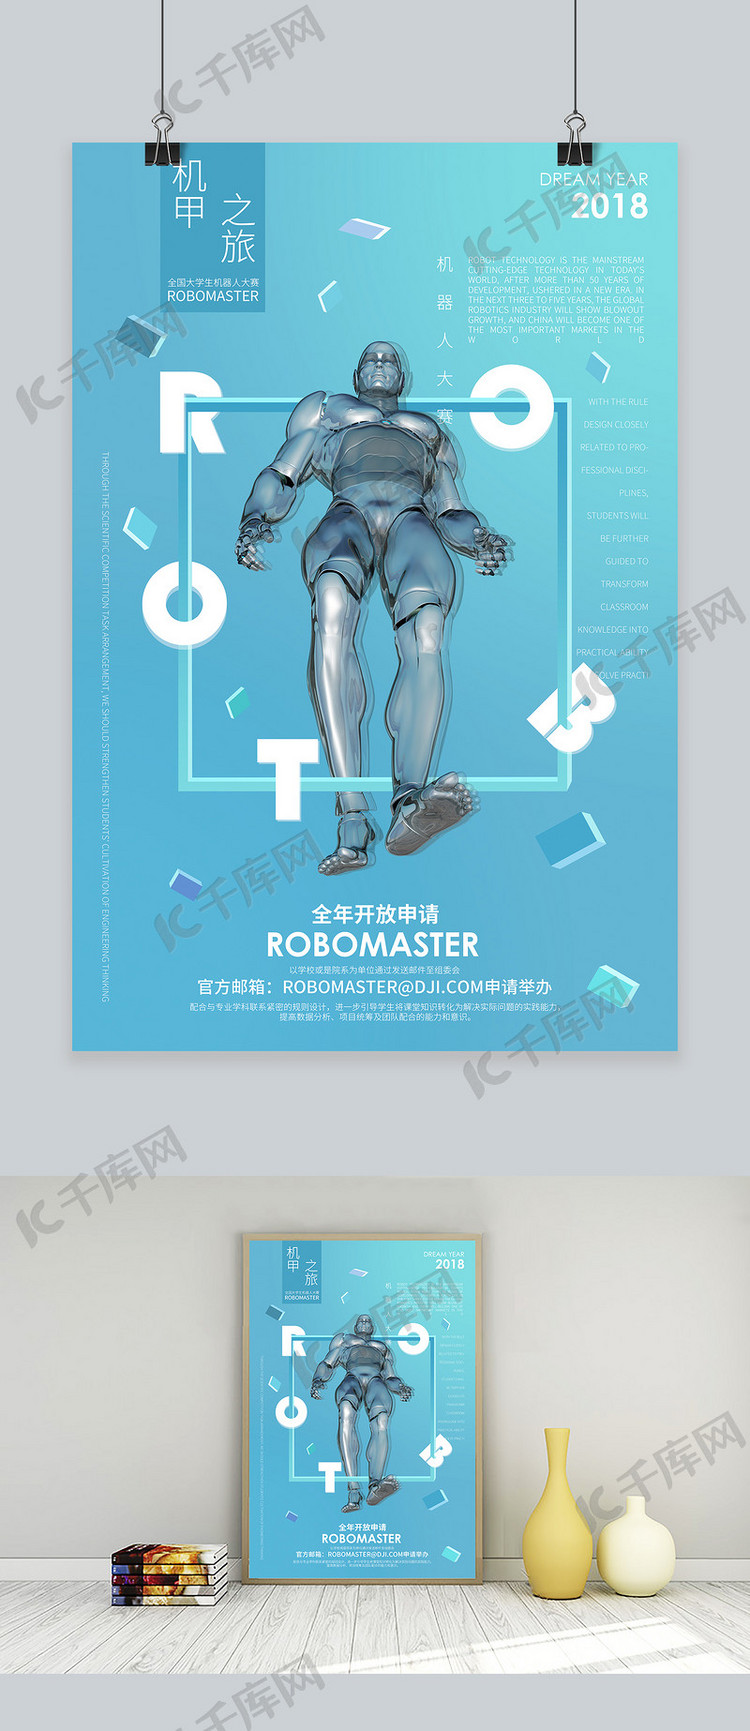 蓝色梦幻简约高校机器人比赛宣传海报